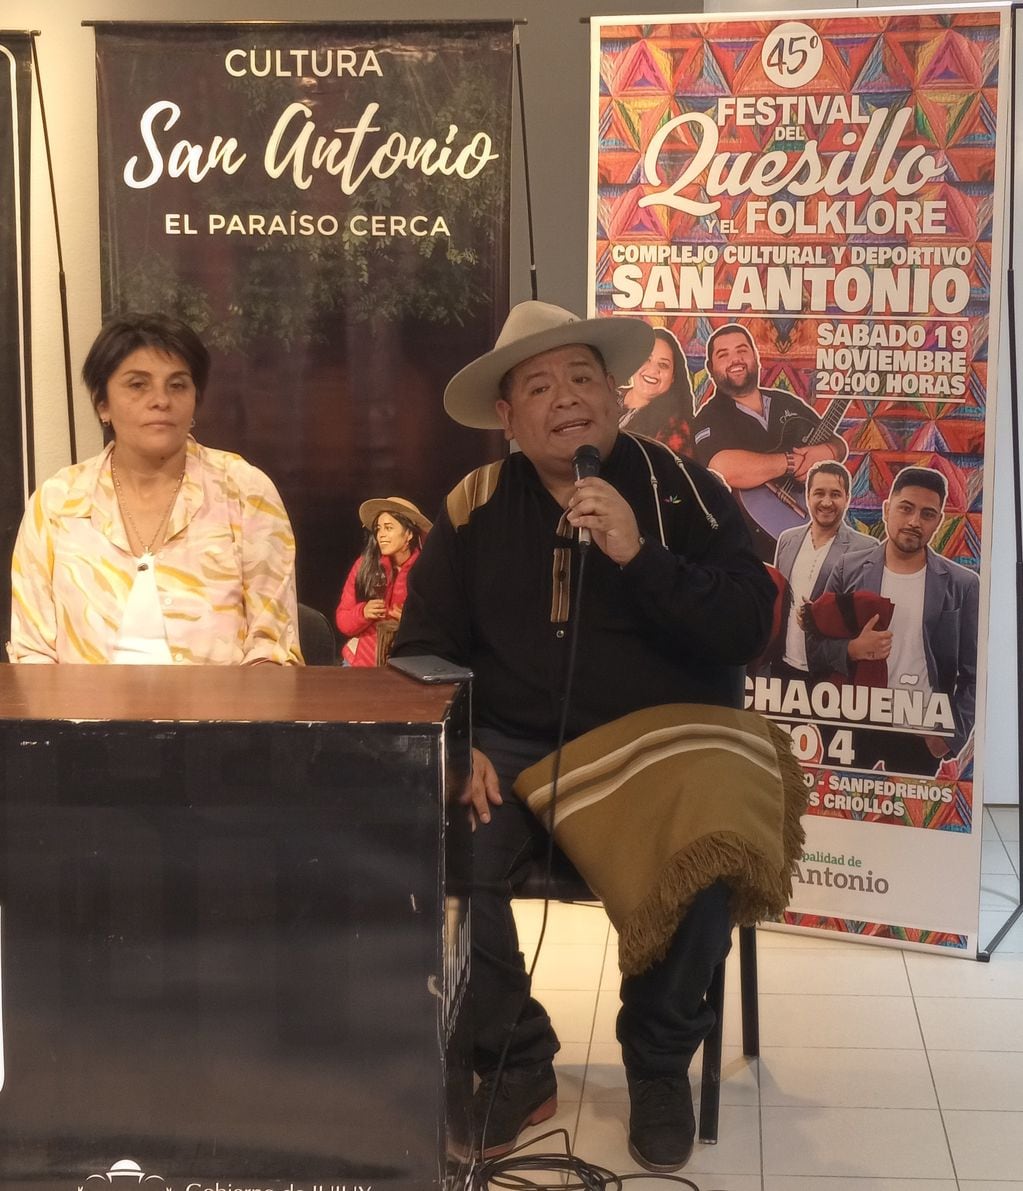 José Luis Villán, integrante del grupo Los Criollos, agradeció a la Provincia y el Municipio de San Antonio por haber trabajado en coordinación para la realización del "Festival del Quesillo y el Folclore".